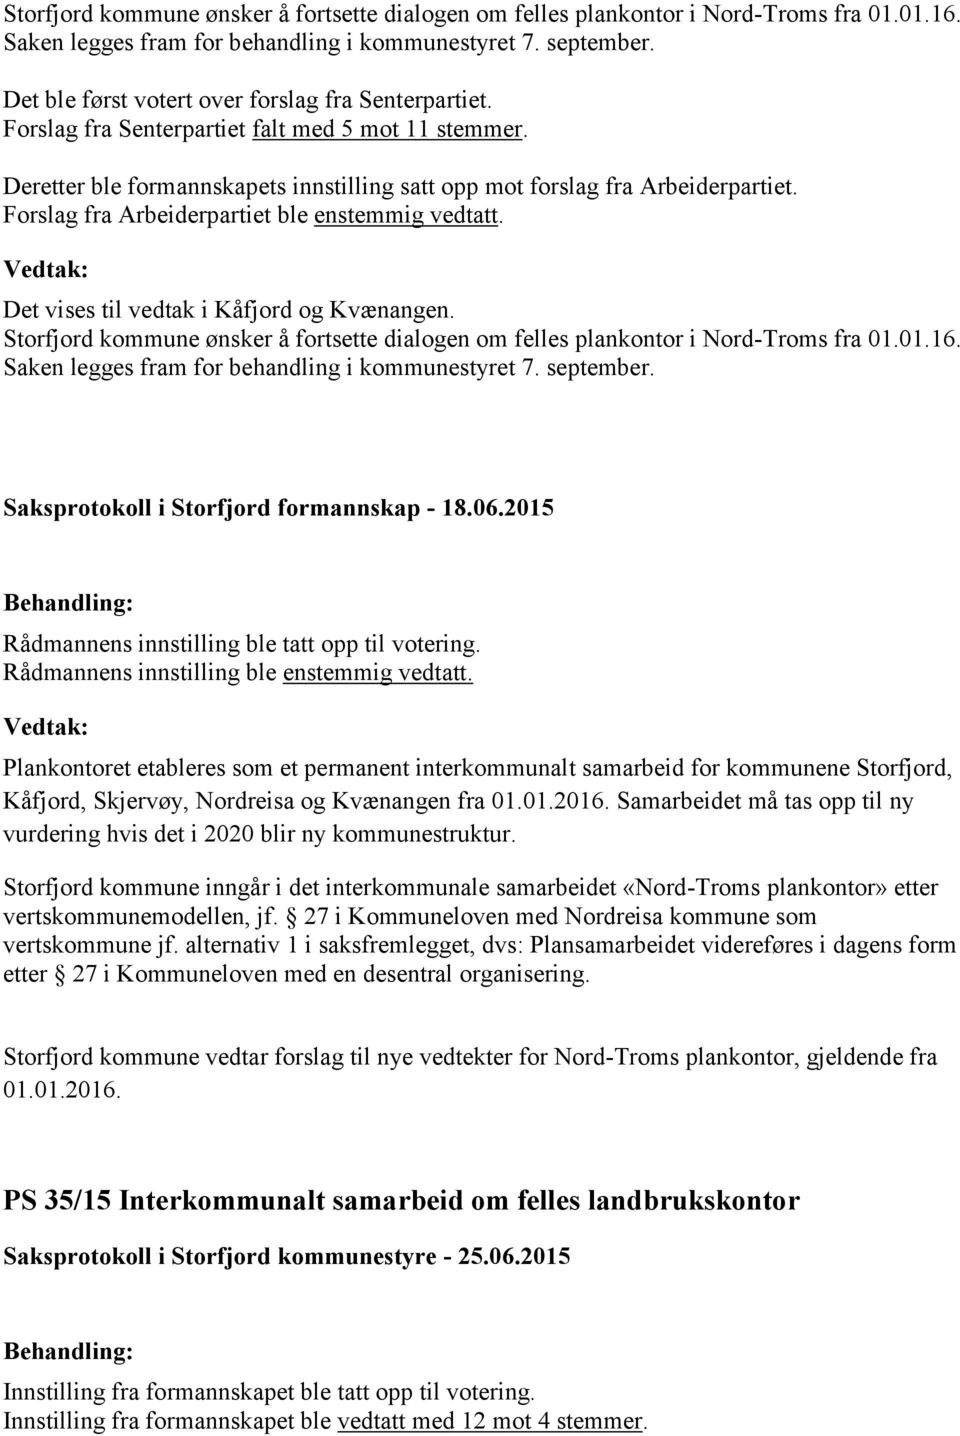 Forslag fra Arbeiderpartiet ble enstemmig vedtatt. Det vises til vedtak i Kåfjord og Kvænangen.  Saksprotokoll i Storfjord formannskap - 18.06.2015 Rådmannens innstilling ble tatt opp til votering.